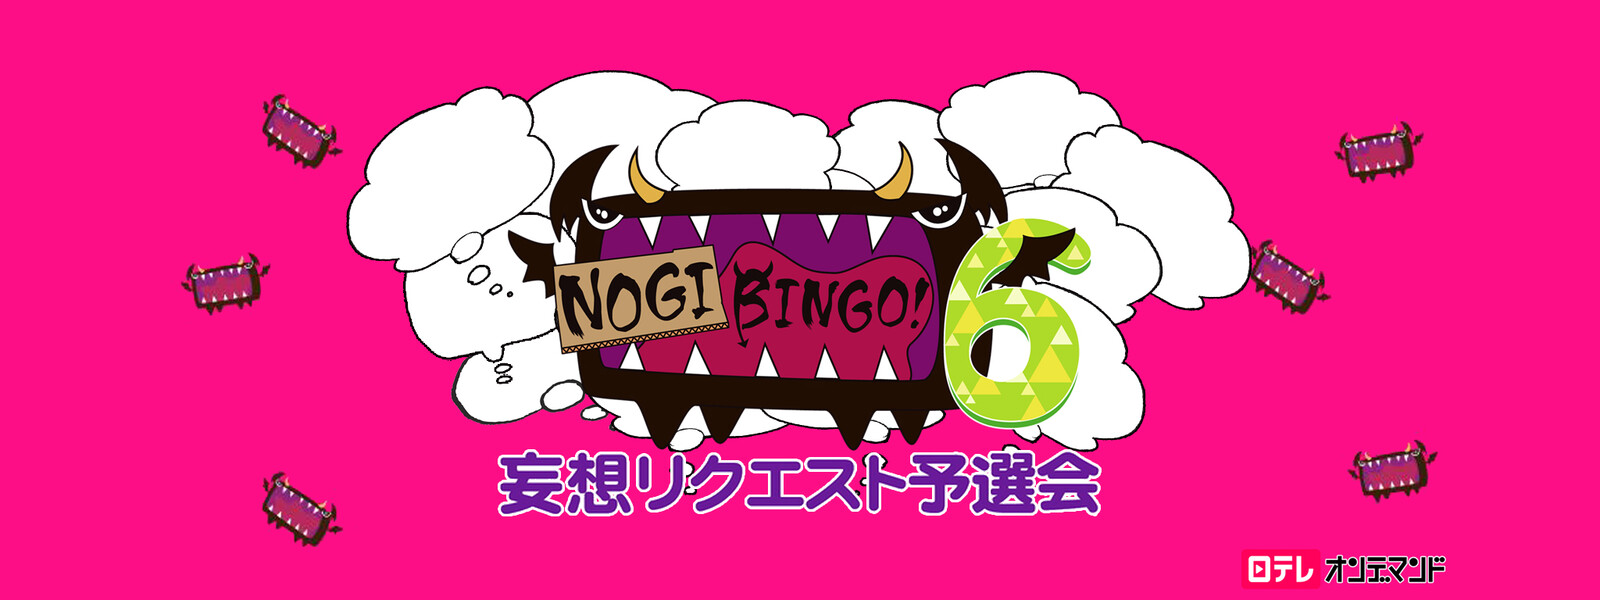 NOGIBINGO! 6 妄想リクエスト予選会の動画 - NOGIBINGO! 3